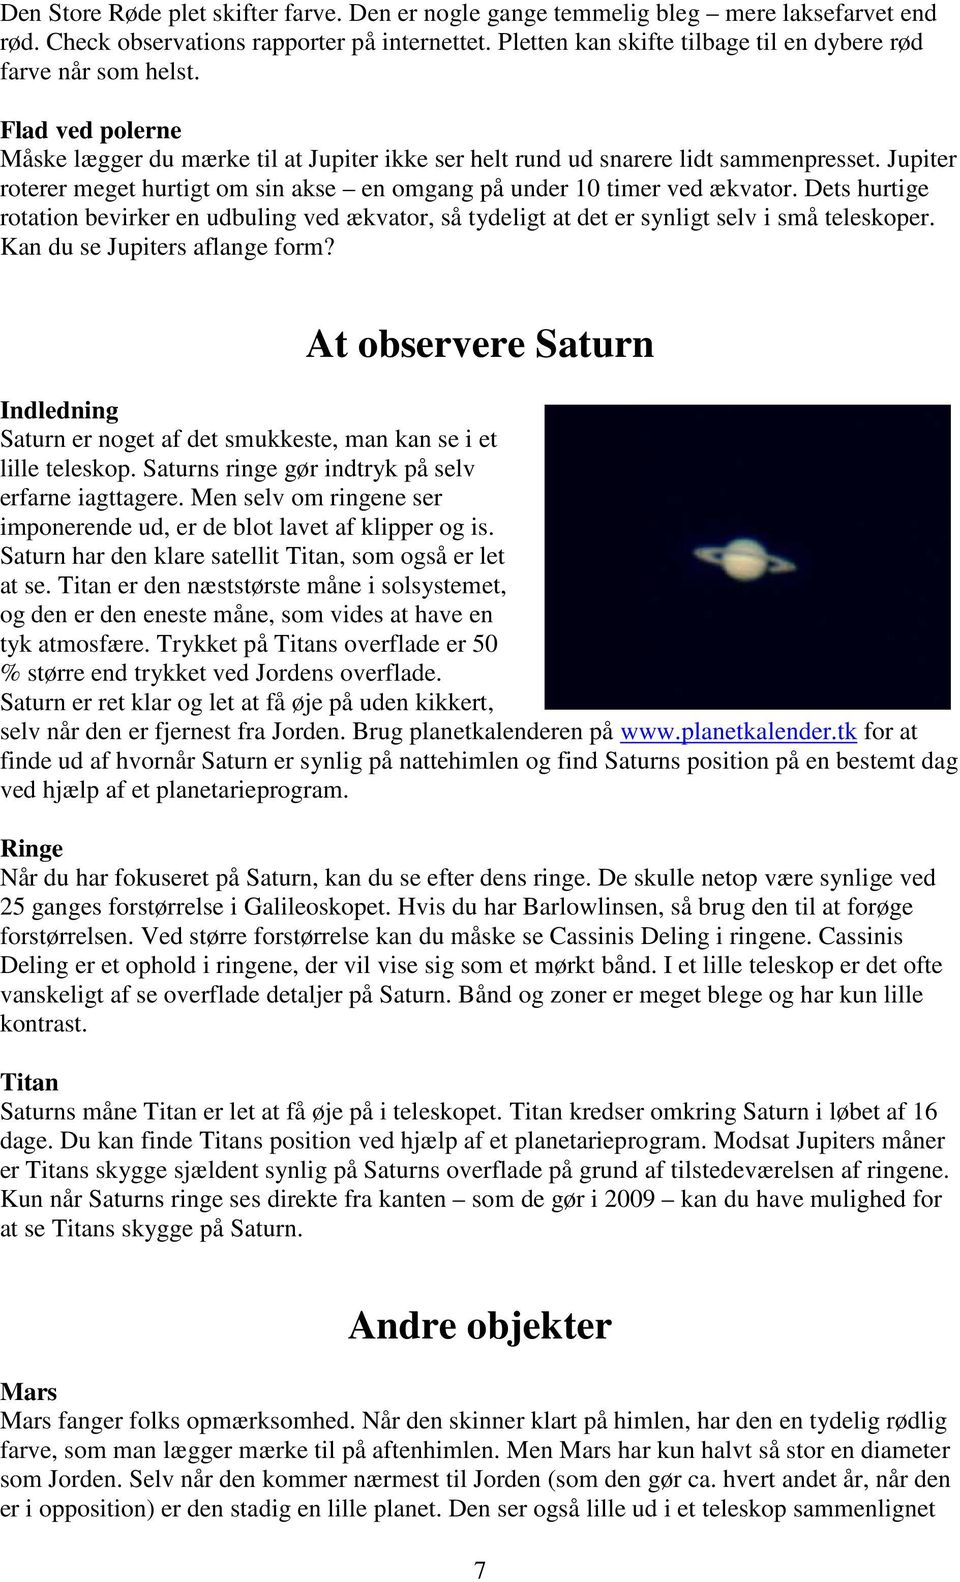 Jupiter roterer meget hurtigt om sin akse en omgang på under 10 timer ved ækvator. Dets hurtige rotation bevirker en udbuling ved ækvator, så tydeligt at det er synligt selv i små teleskoper.